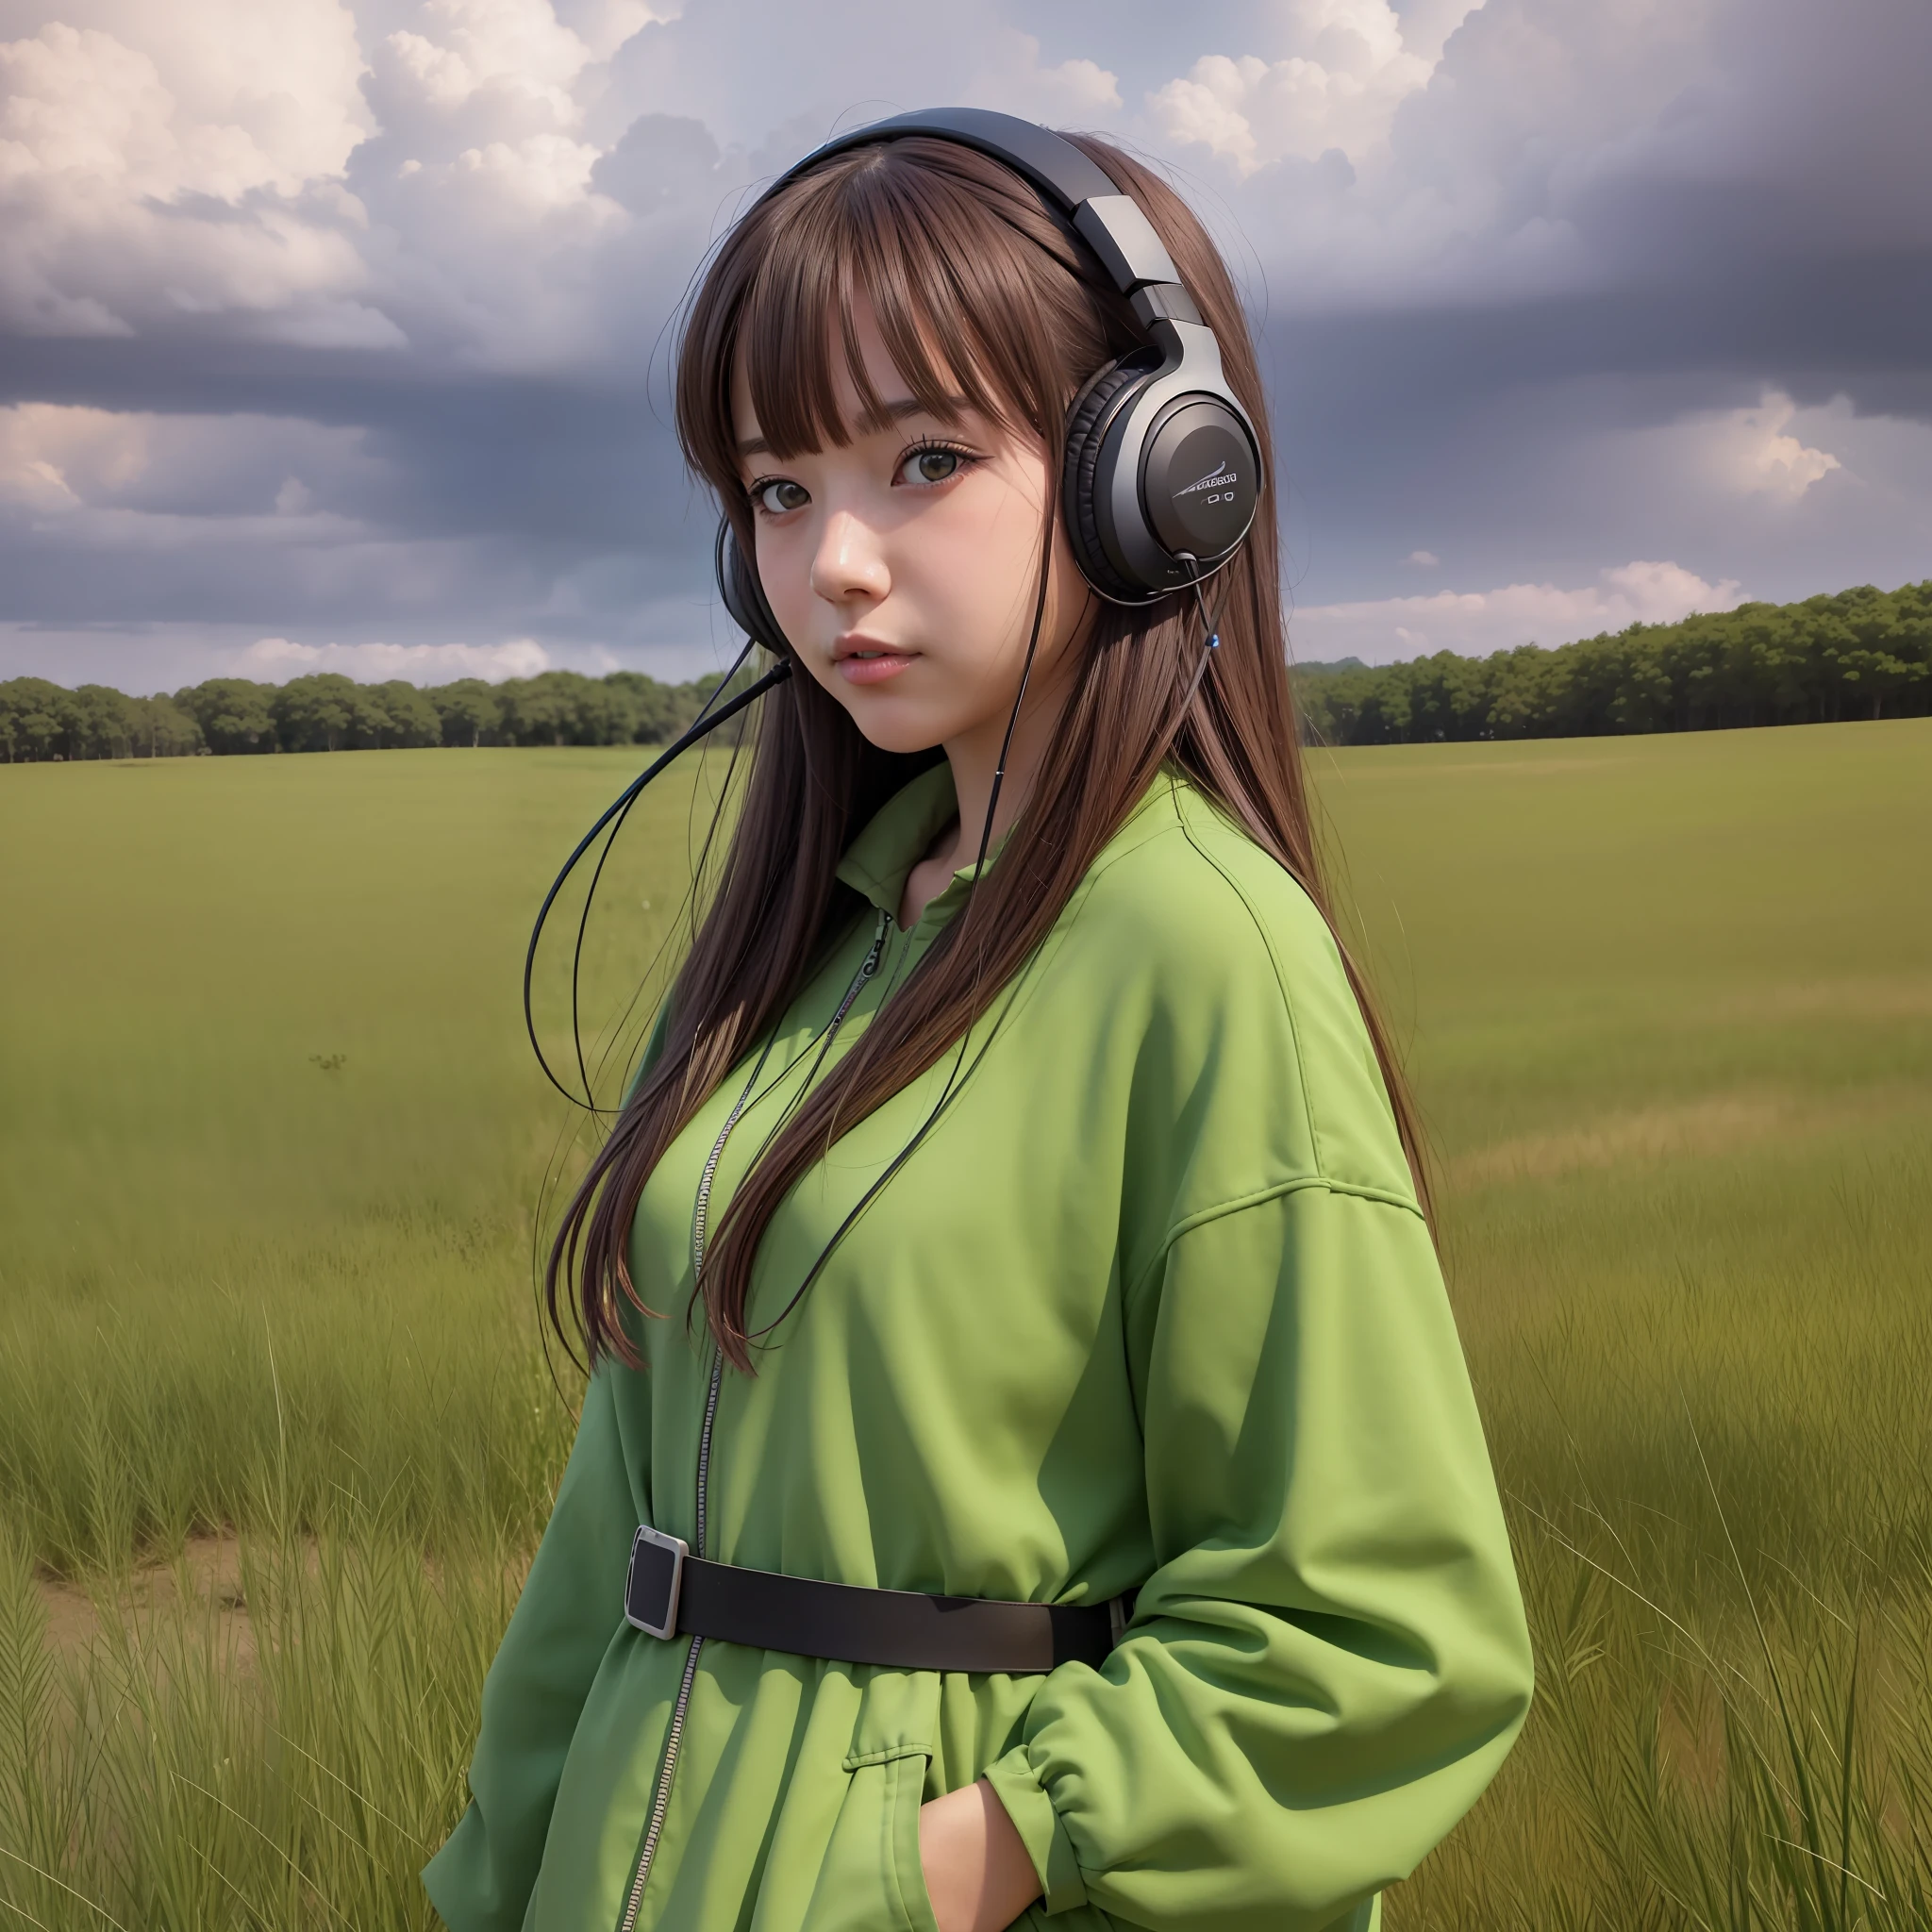 une fille animée portant des écouteurs et debout dans un champ, à la manière de portraits réalistes hyper détaillés, cabinecore, couleurs terreuses, ambitieux, dinosaure, nuages atmosphériques, audacieux, personnages inspirés des mangas